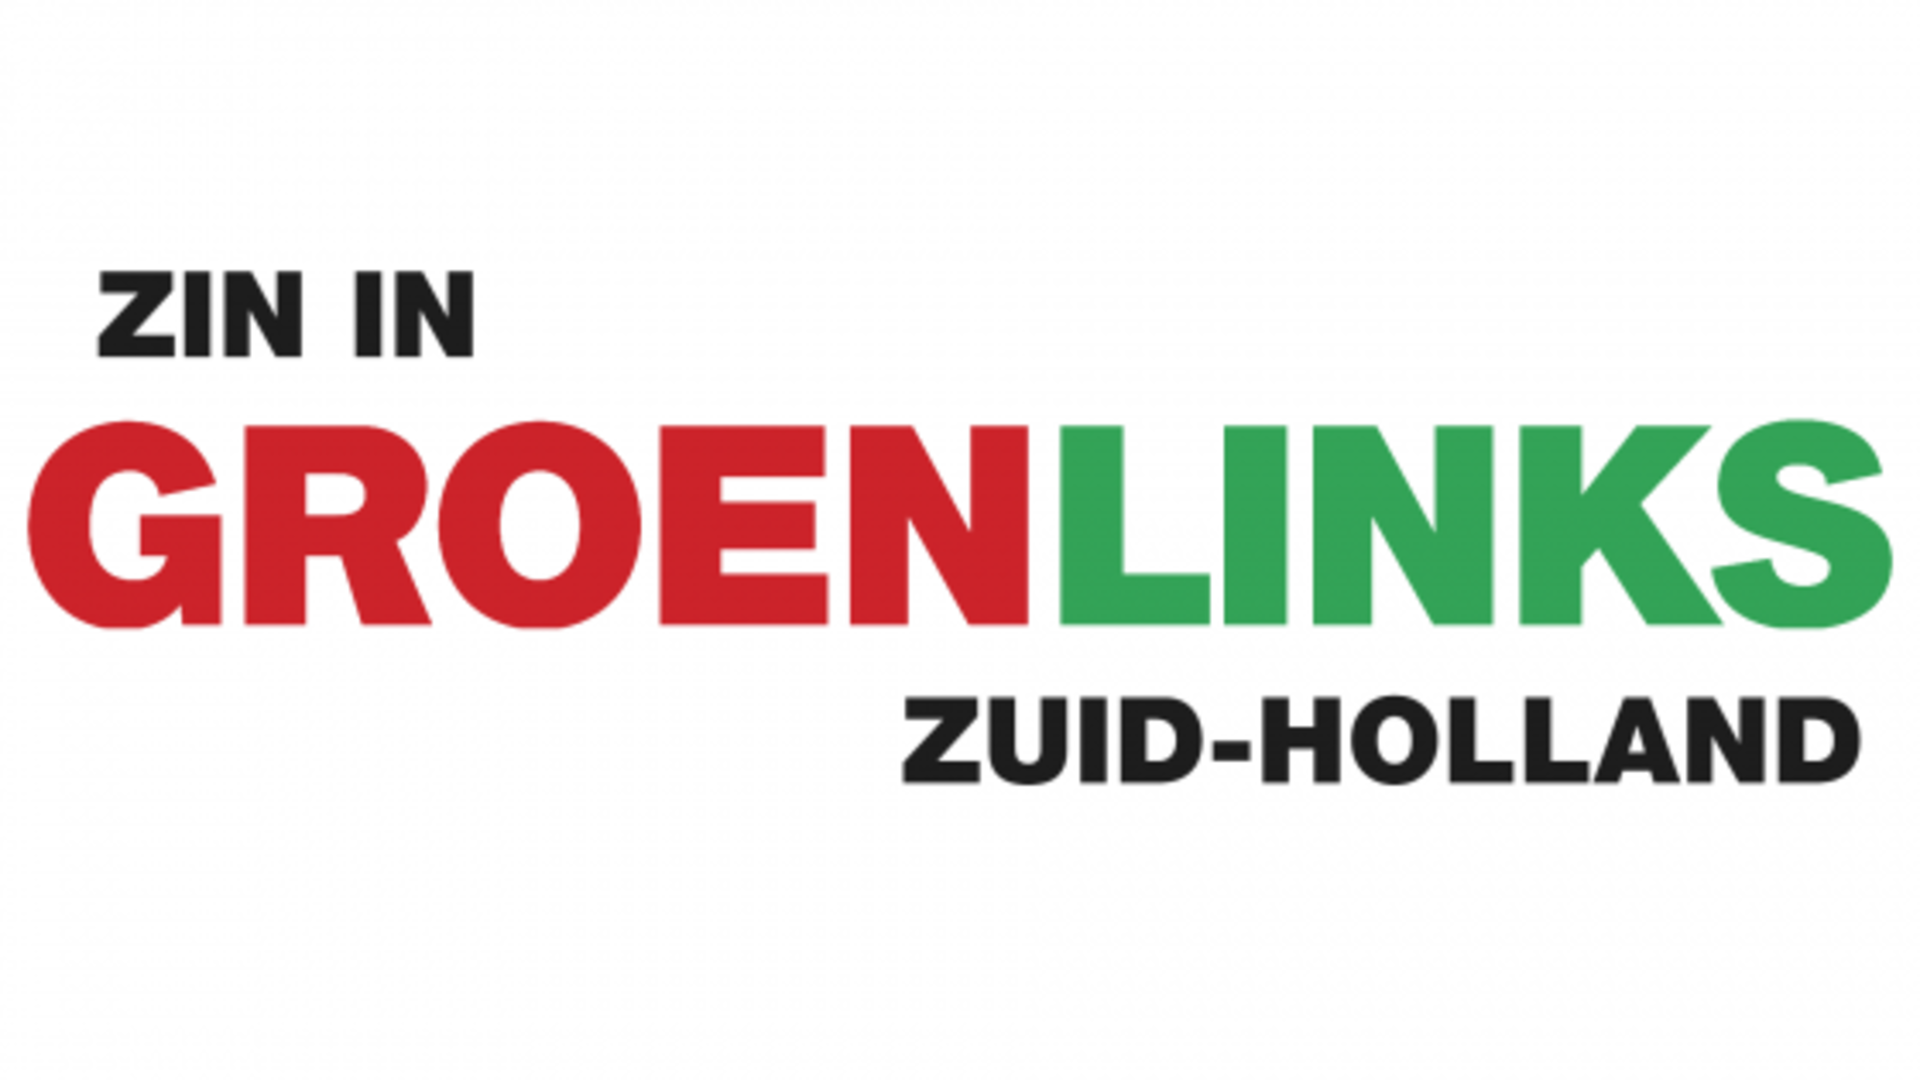 Zin in GroenLinks Zuid-Holland